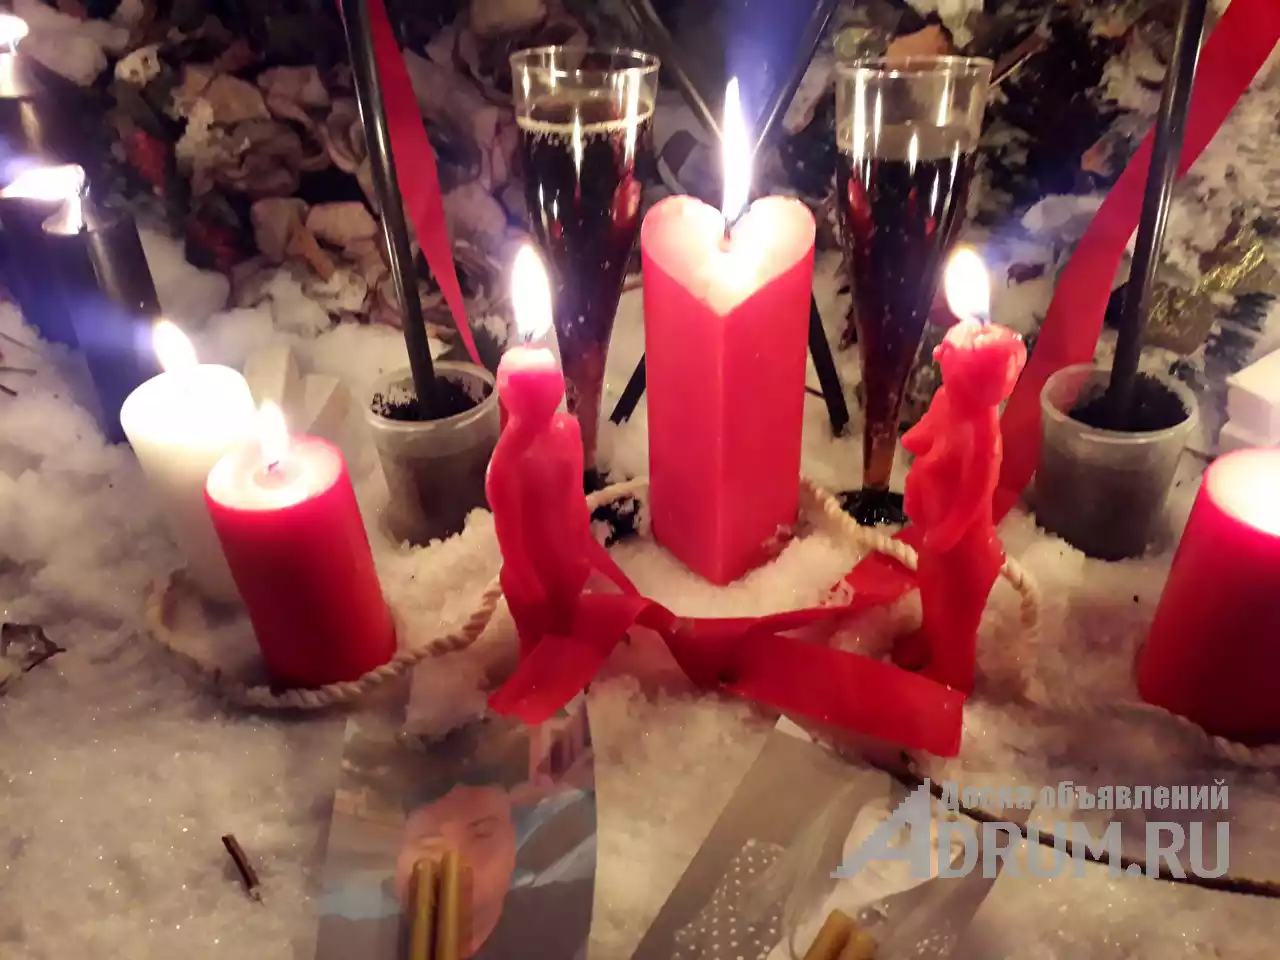 Сексуальная привязка егельет Видео присутствие на ритуале в Мытищи